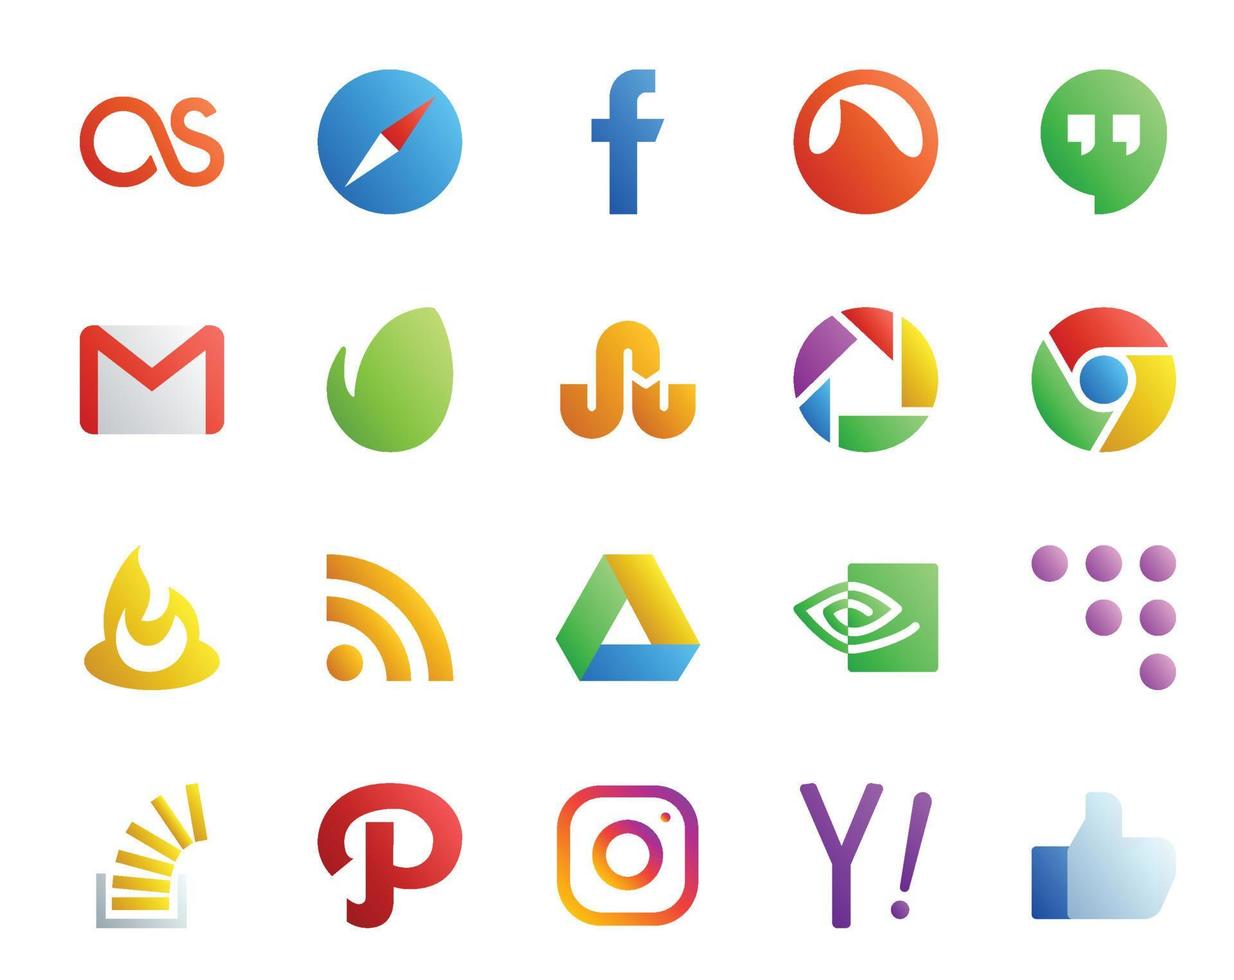 20 Symbolpakete für soziale Medien, einschließlich Coderwall, Google Drive, Mail, RSS, Chrom vektor